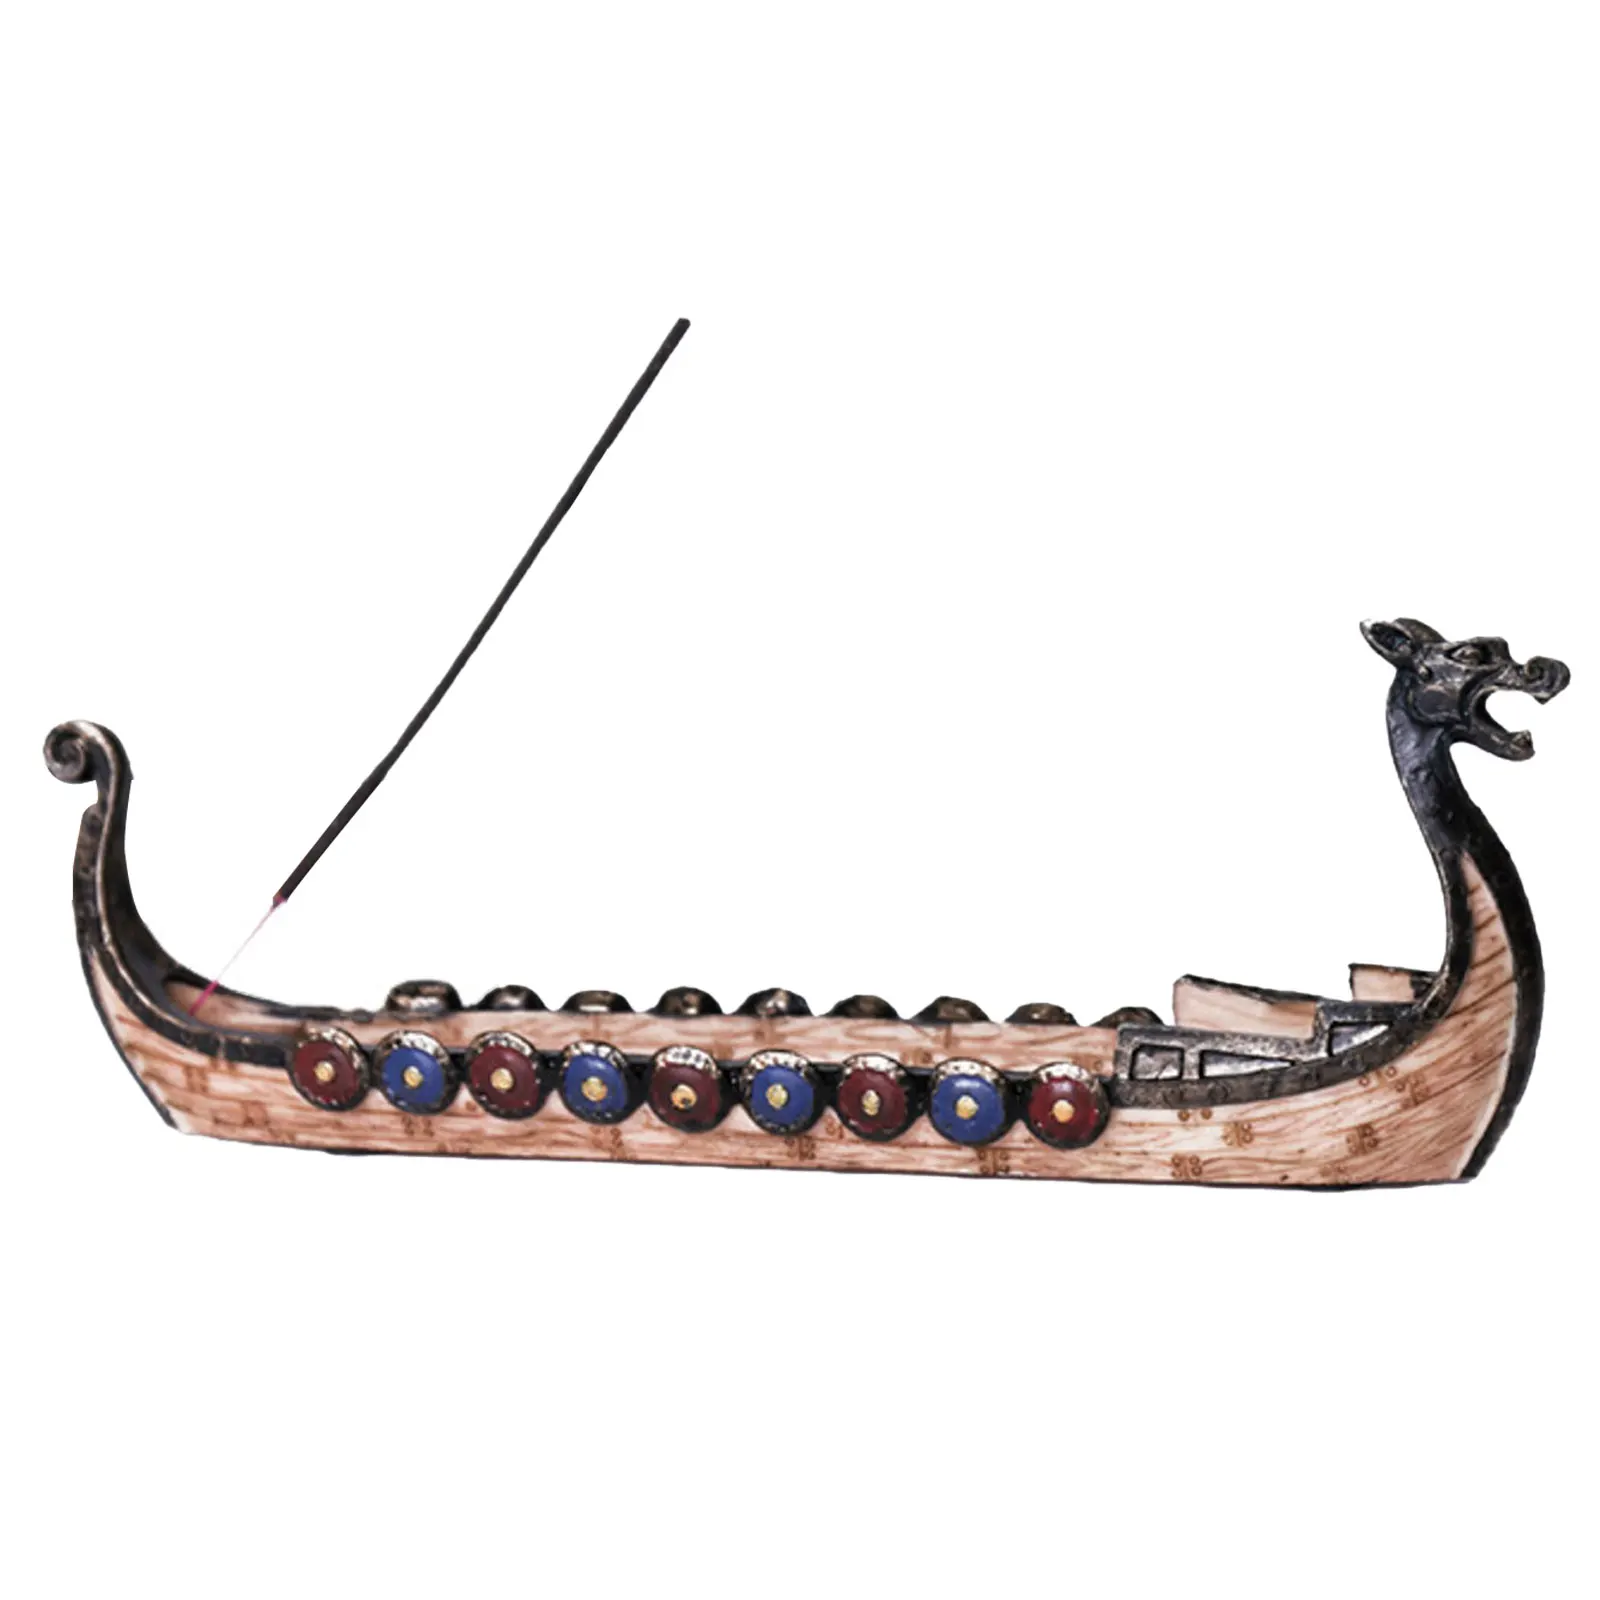 Dragon on Viking Boat Ornament Incense Censer Resin Incense Stick Holder Crafts 